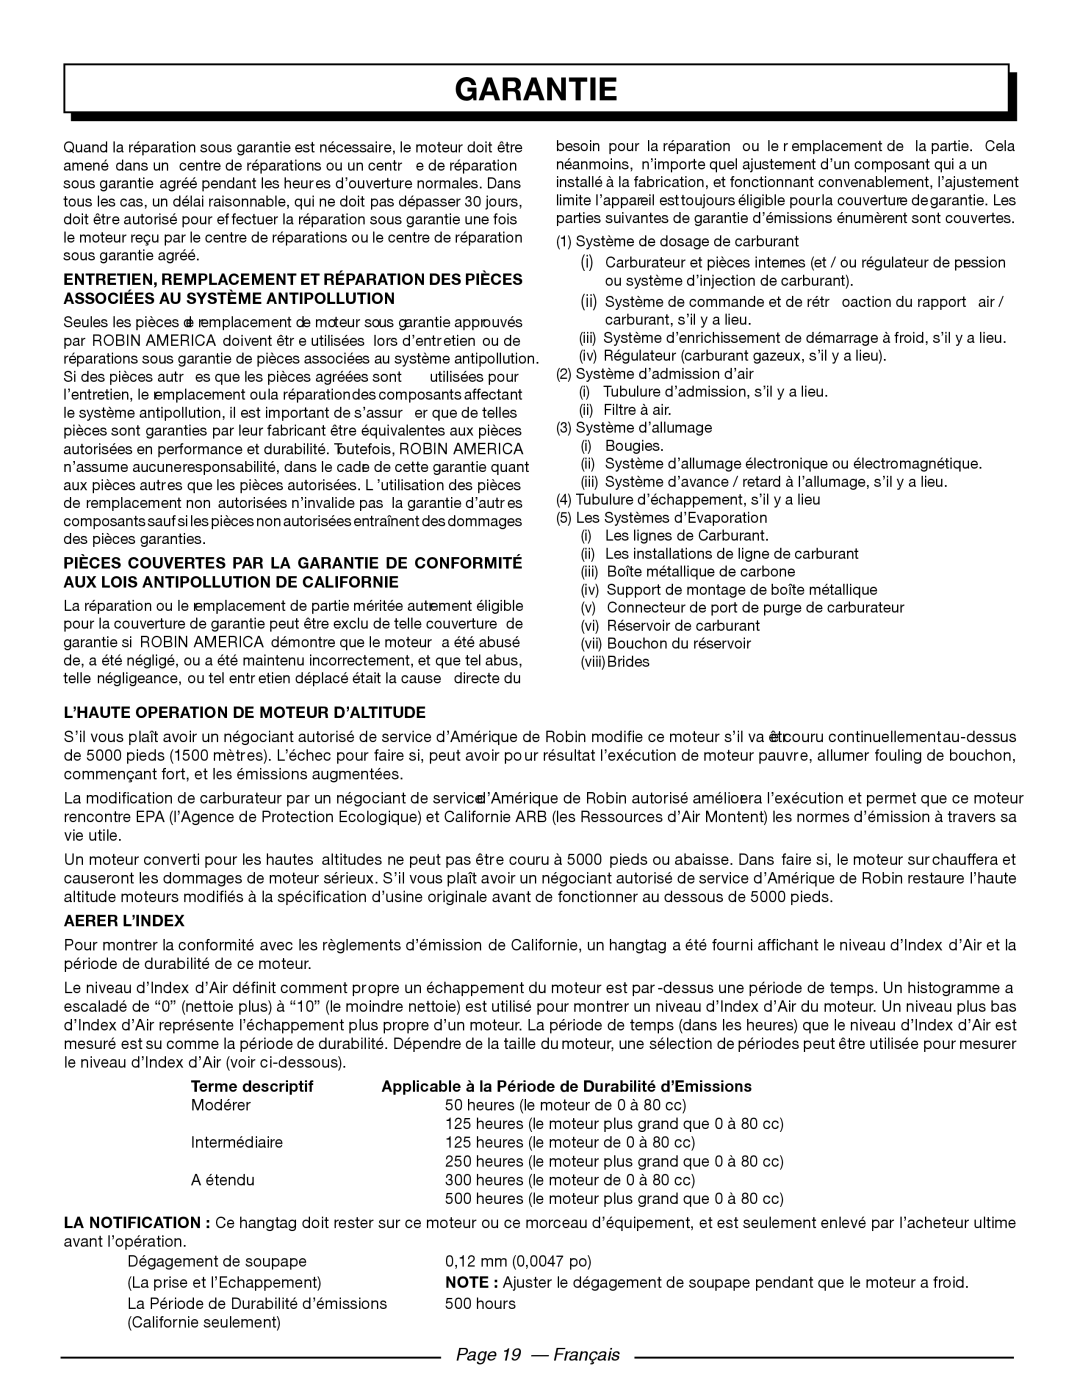 Homelite UT80911 Garantie, Page 19 - Français, L’Haute Operation De Moteur D’Altitude, Aerer L’Index, Terme descriptif 